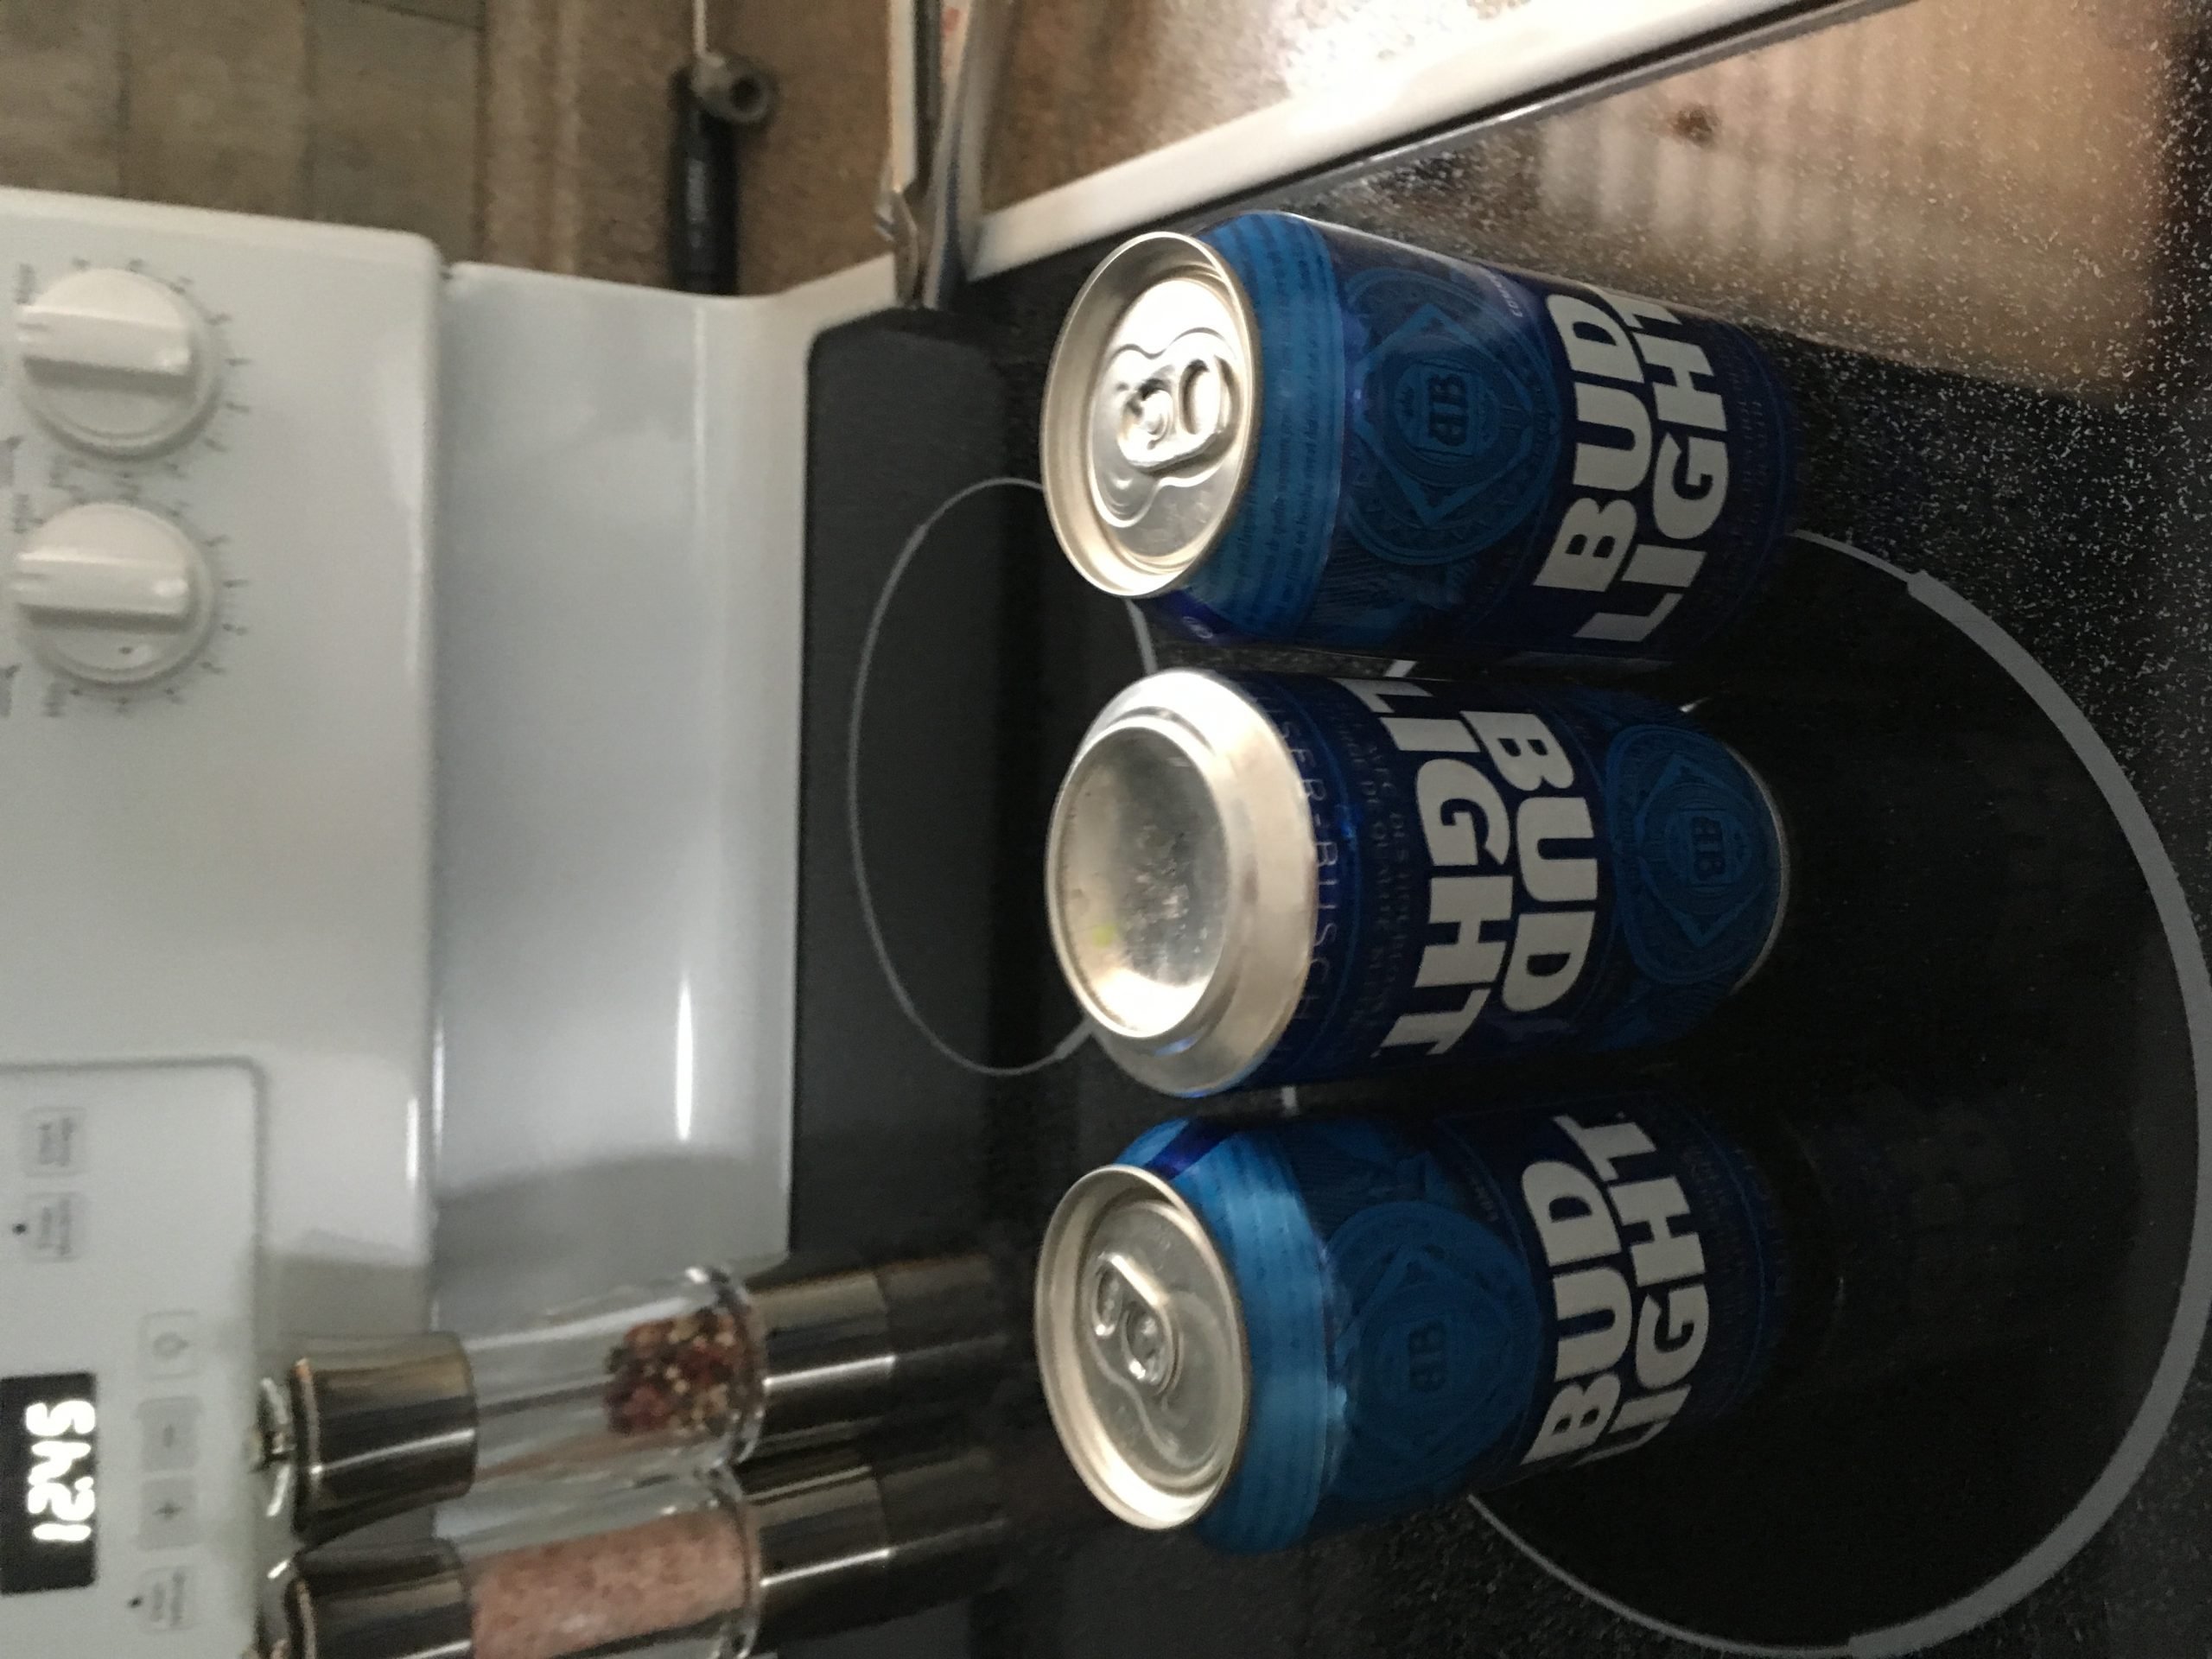 Budweiser complaint Damaged cans